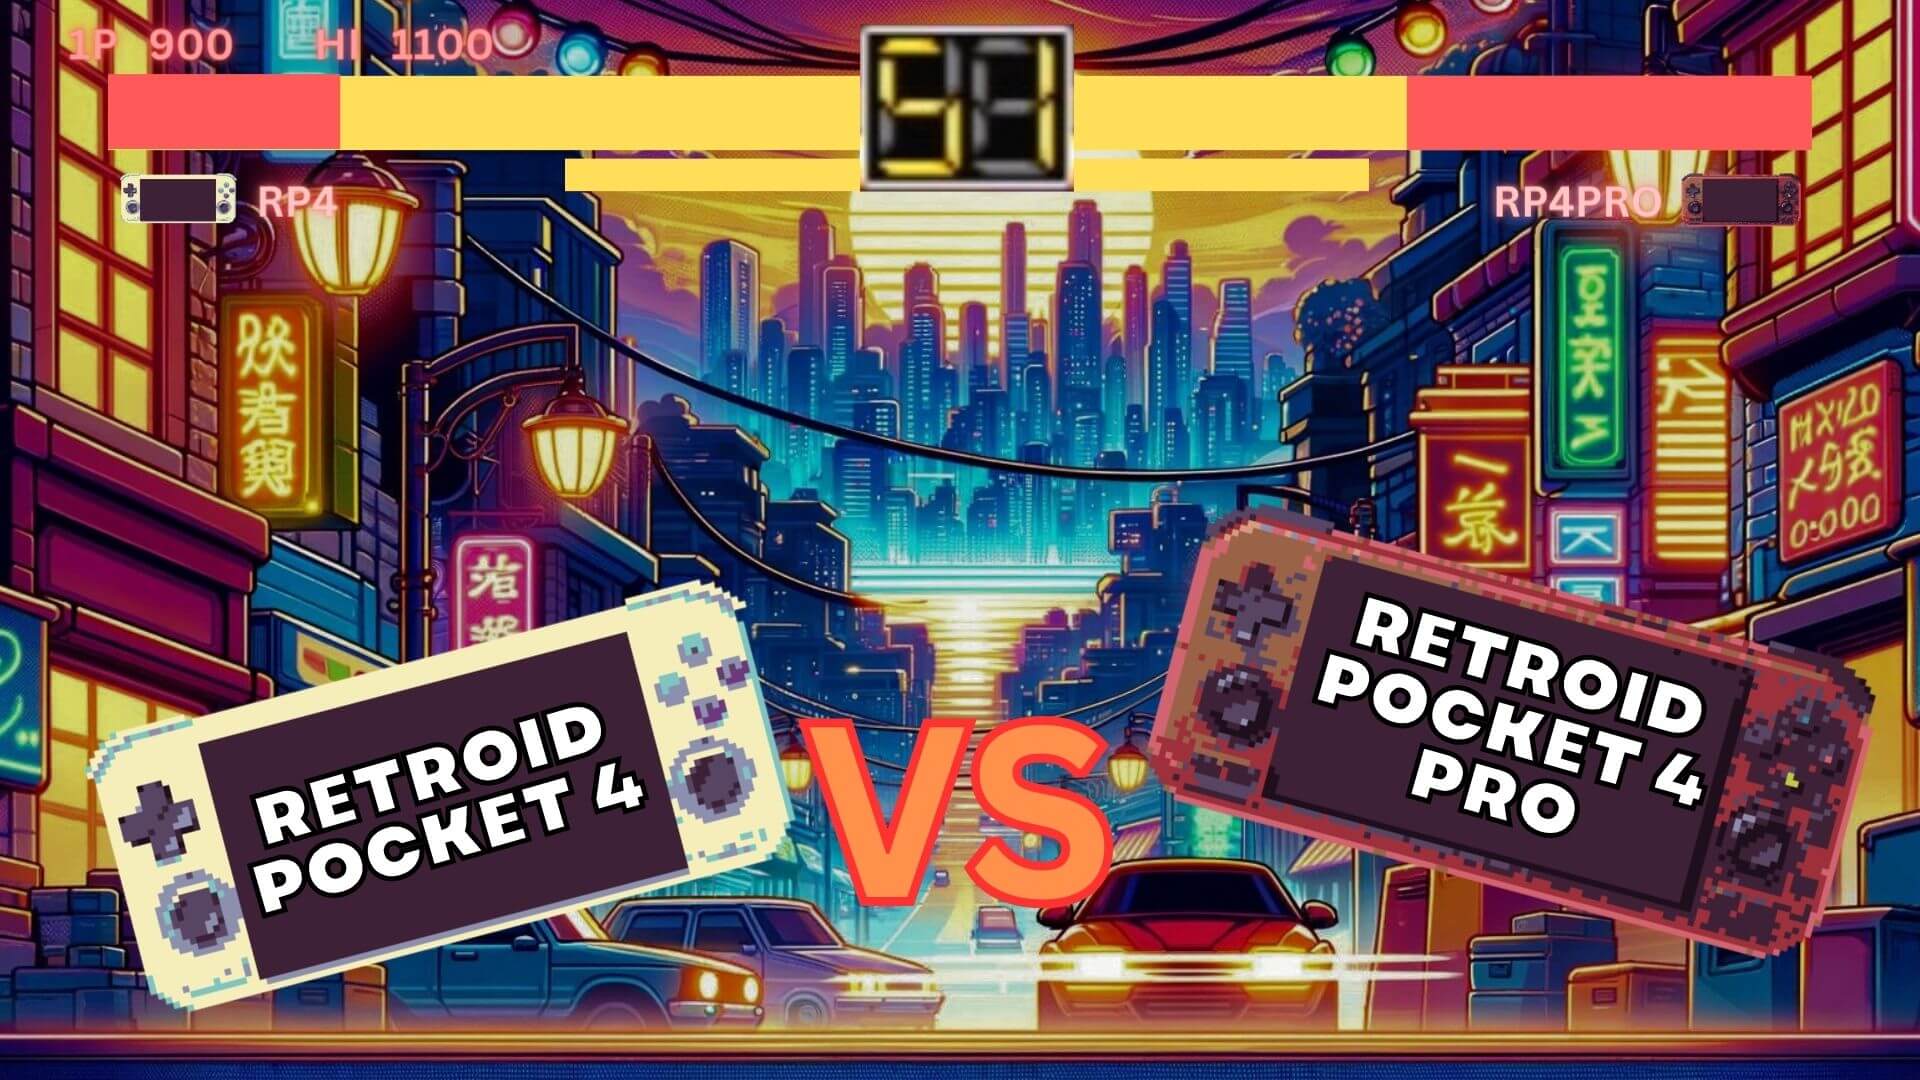 Retroid Pocket 4 vs Retroid Pocket  4 PRO avec vidéo - Quel est le meilleur rapport prix/performance ?